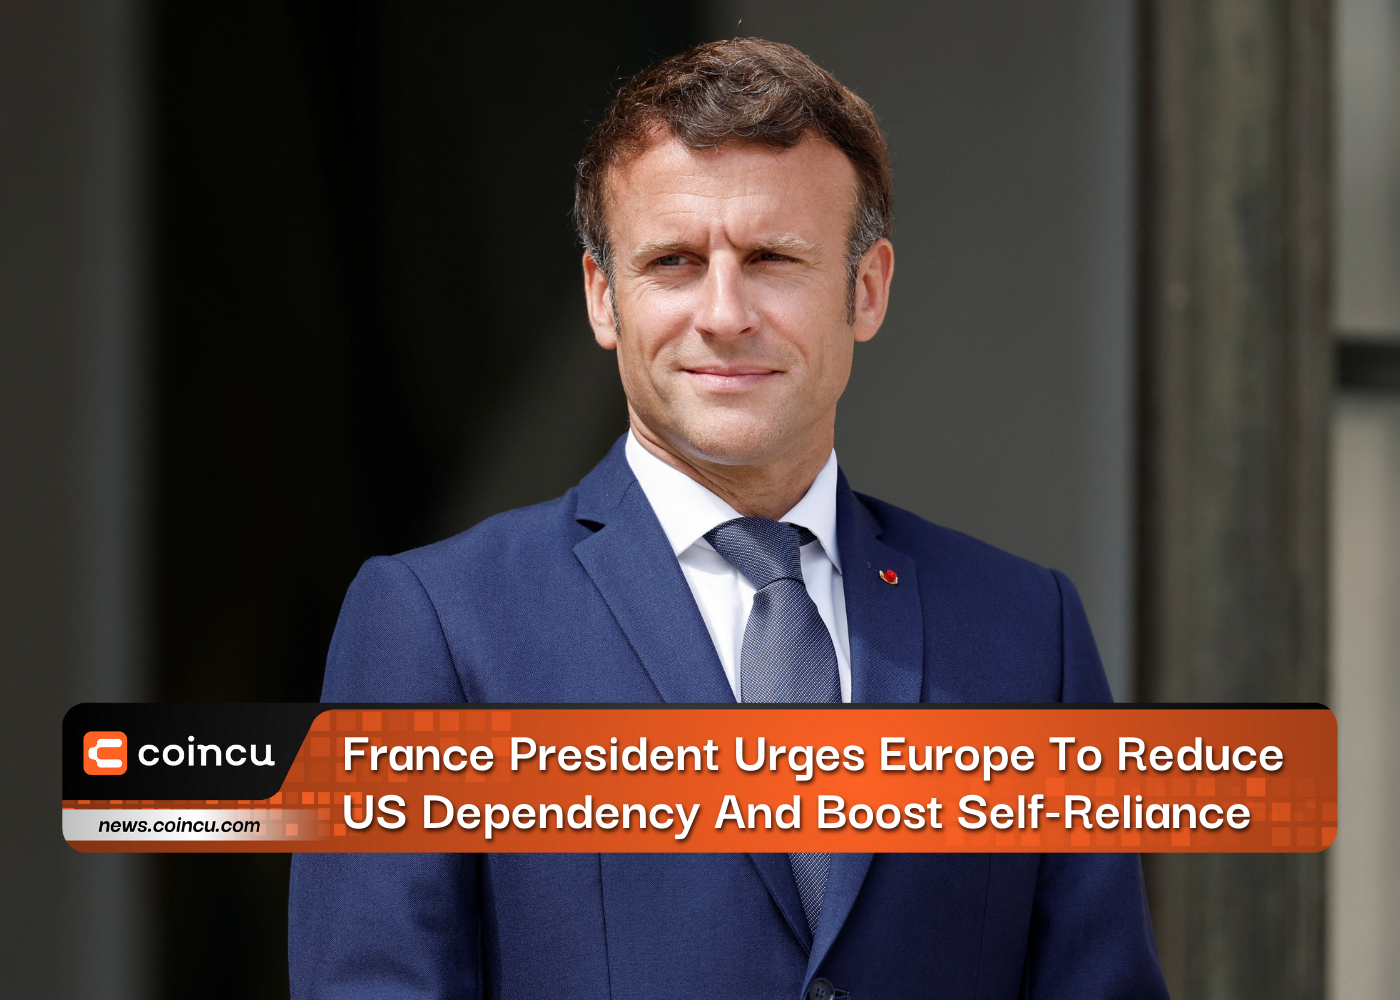 الرئيس الفرنسي يحث أوروبا على تقليل التبعية للولايات المتحدة وتعزيز الاعتماد على الذات